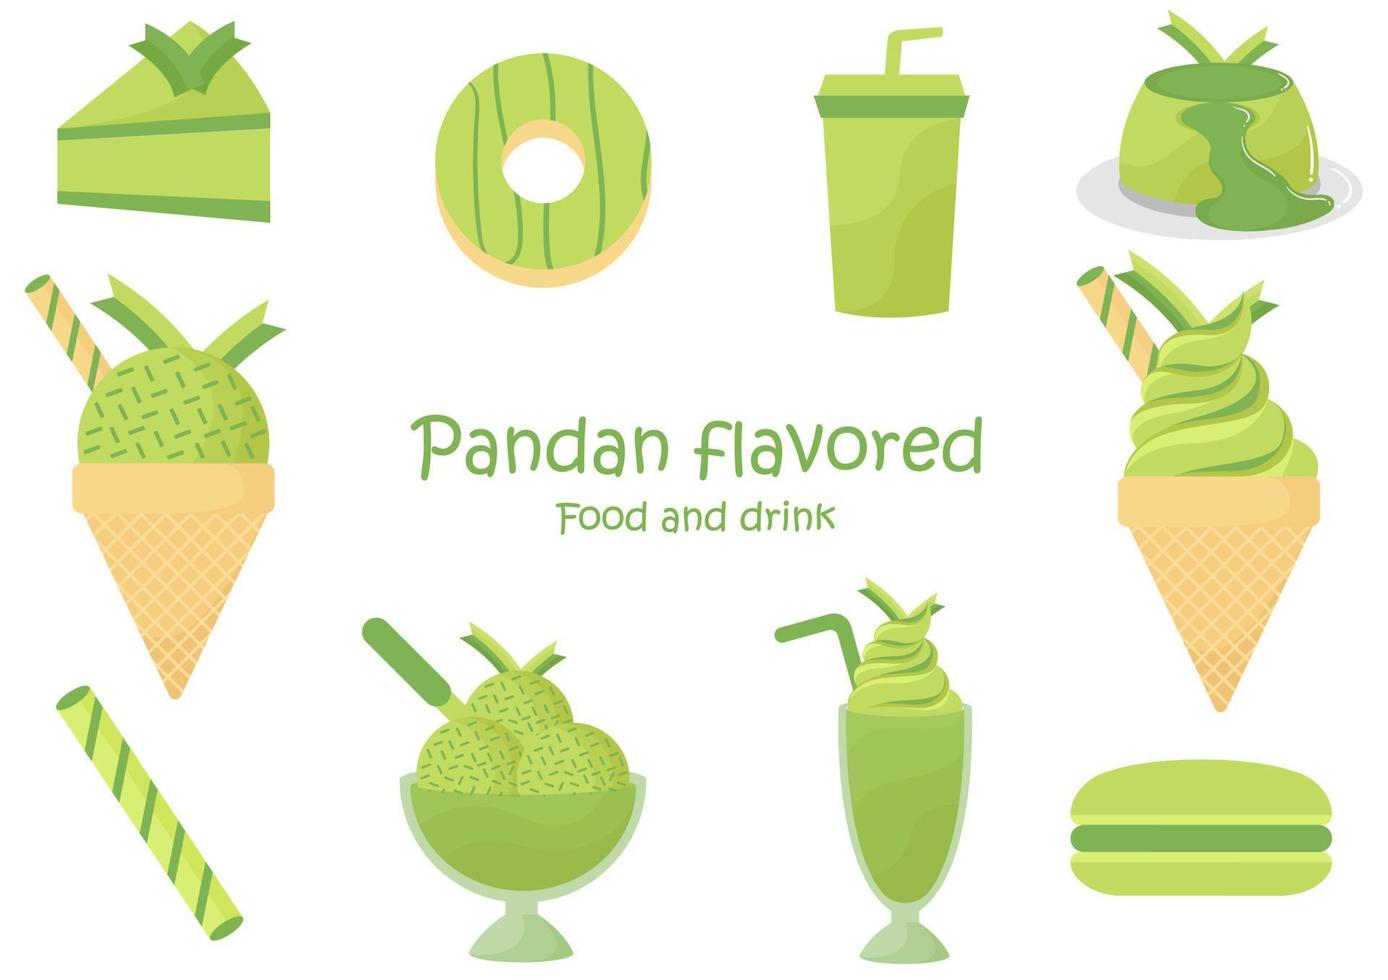 comida y bebida con sabor a pandan vector